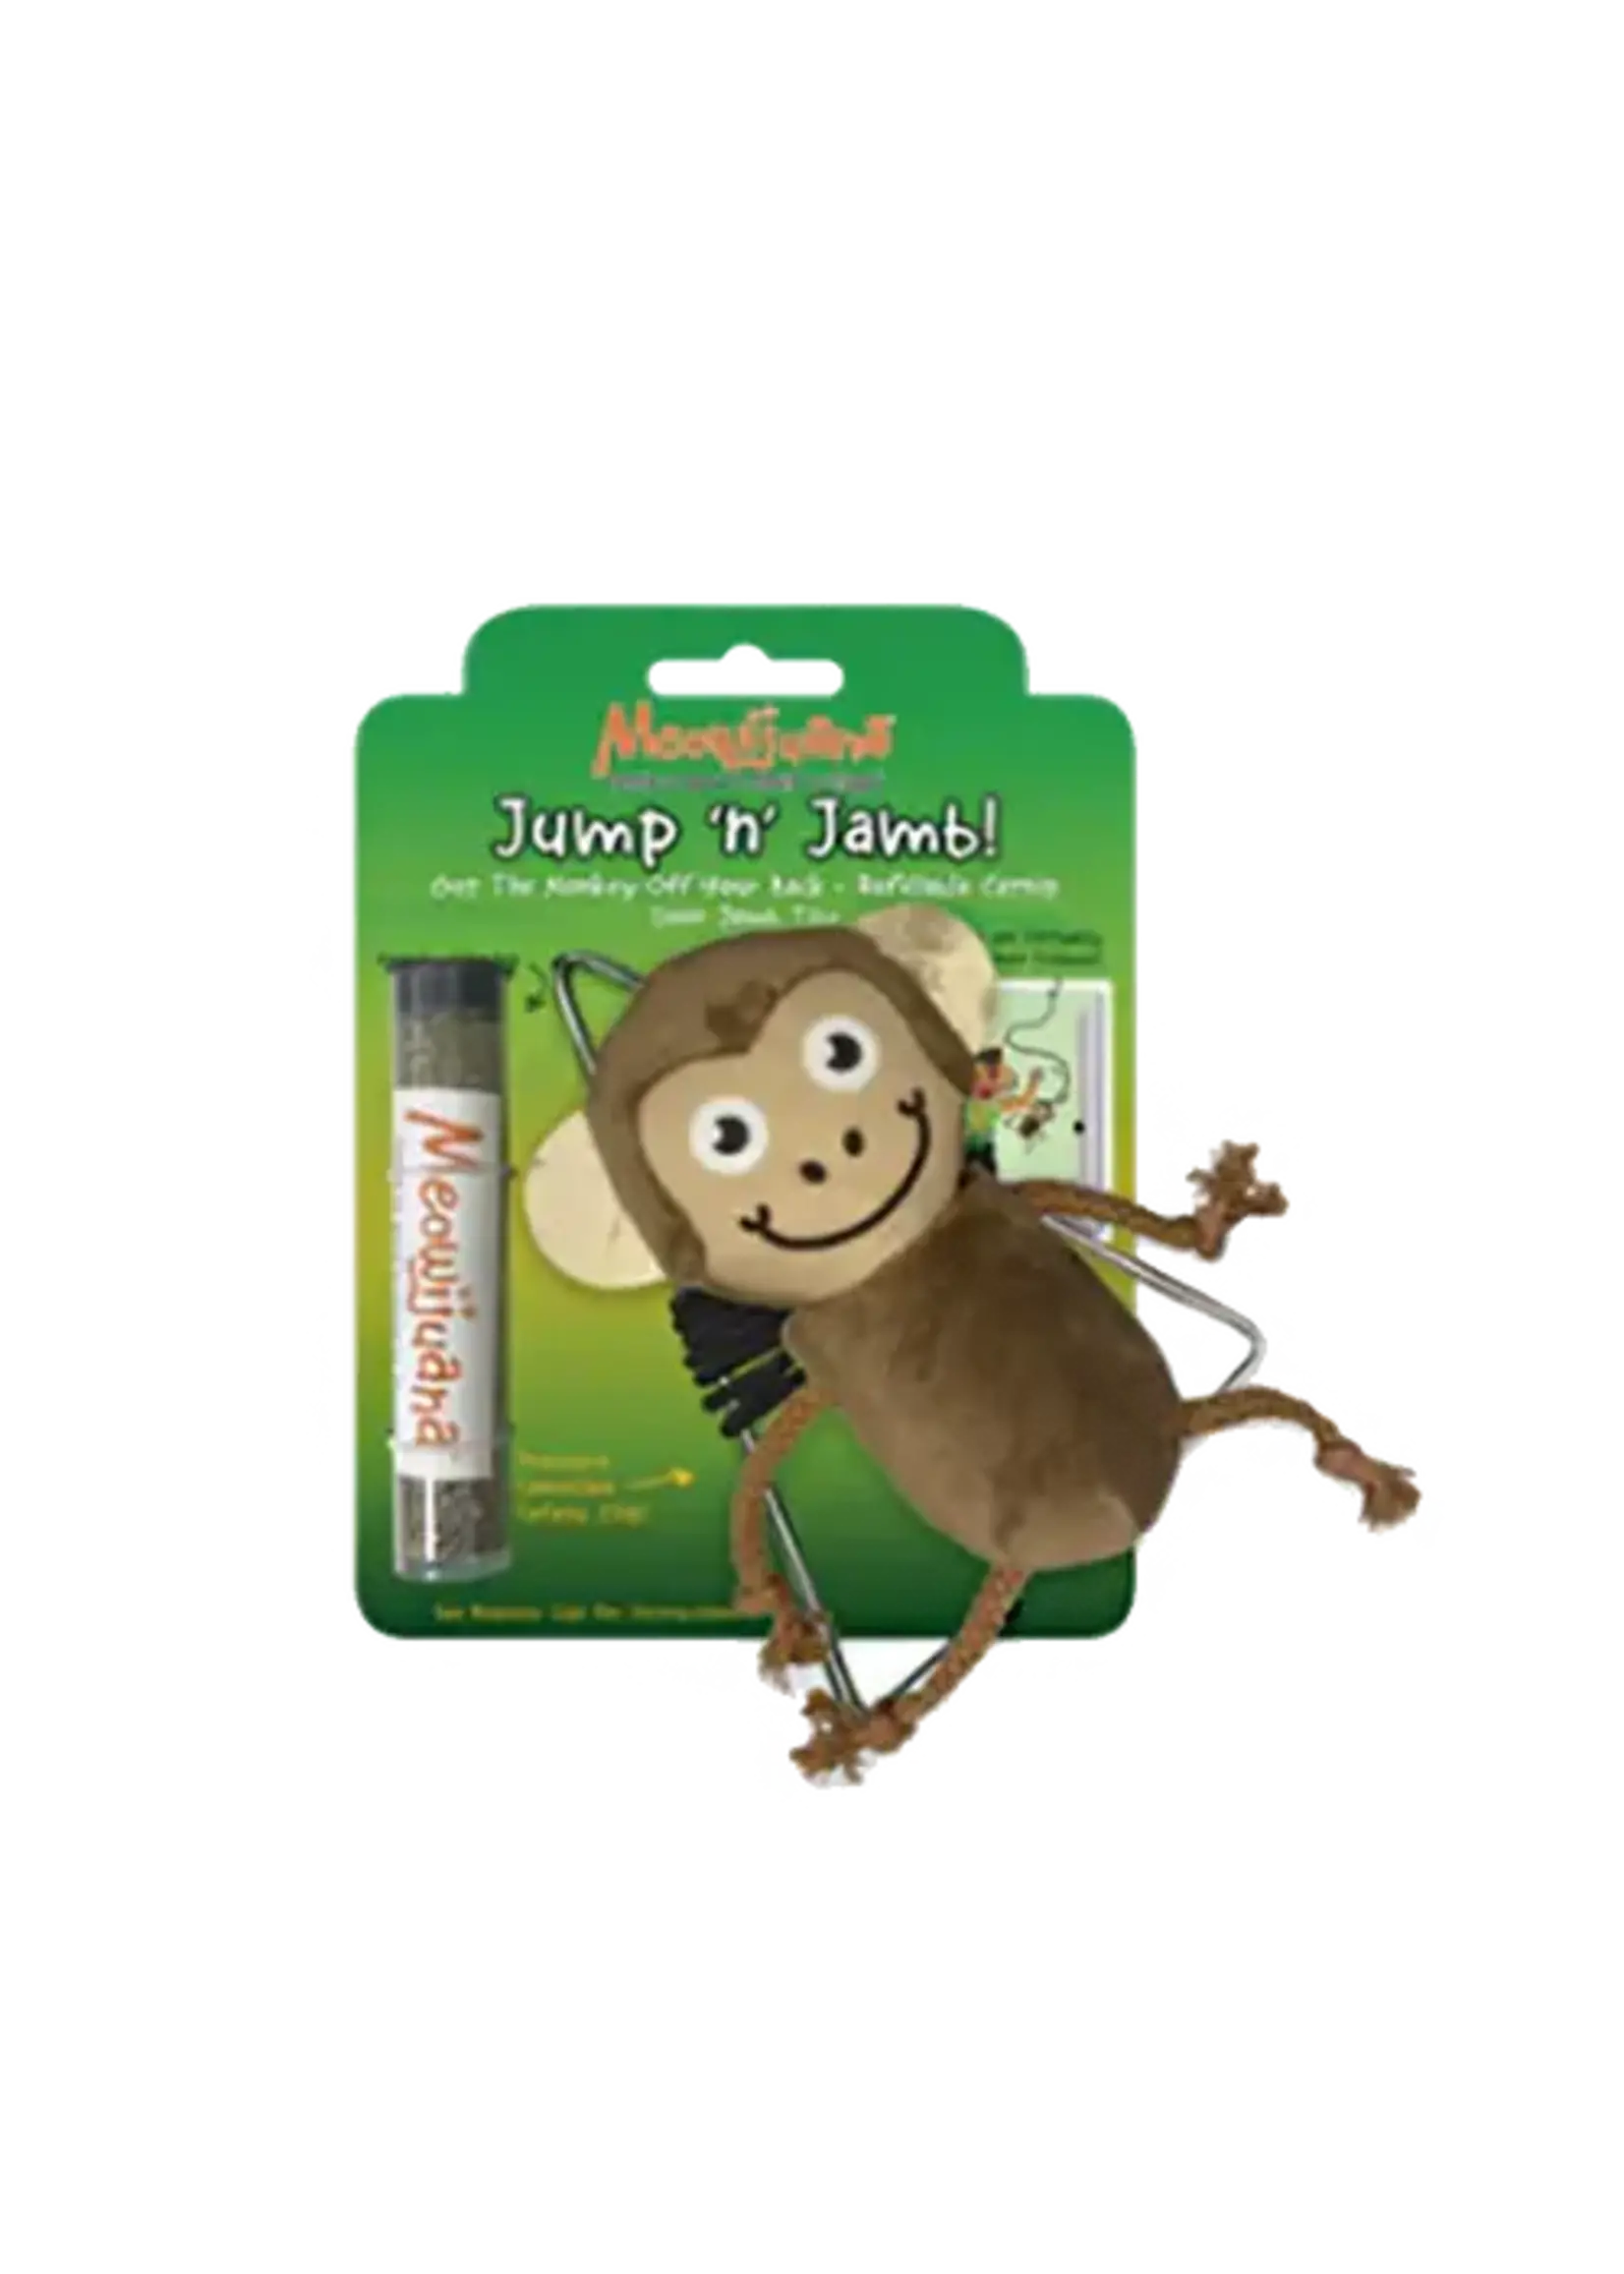 Meowijuana Meowijuana - Jump n Jamb Get the Monkey off your back